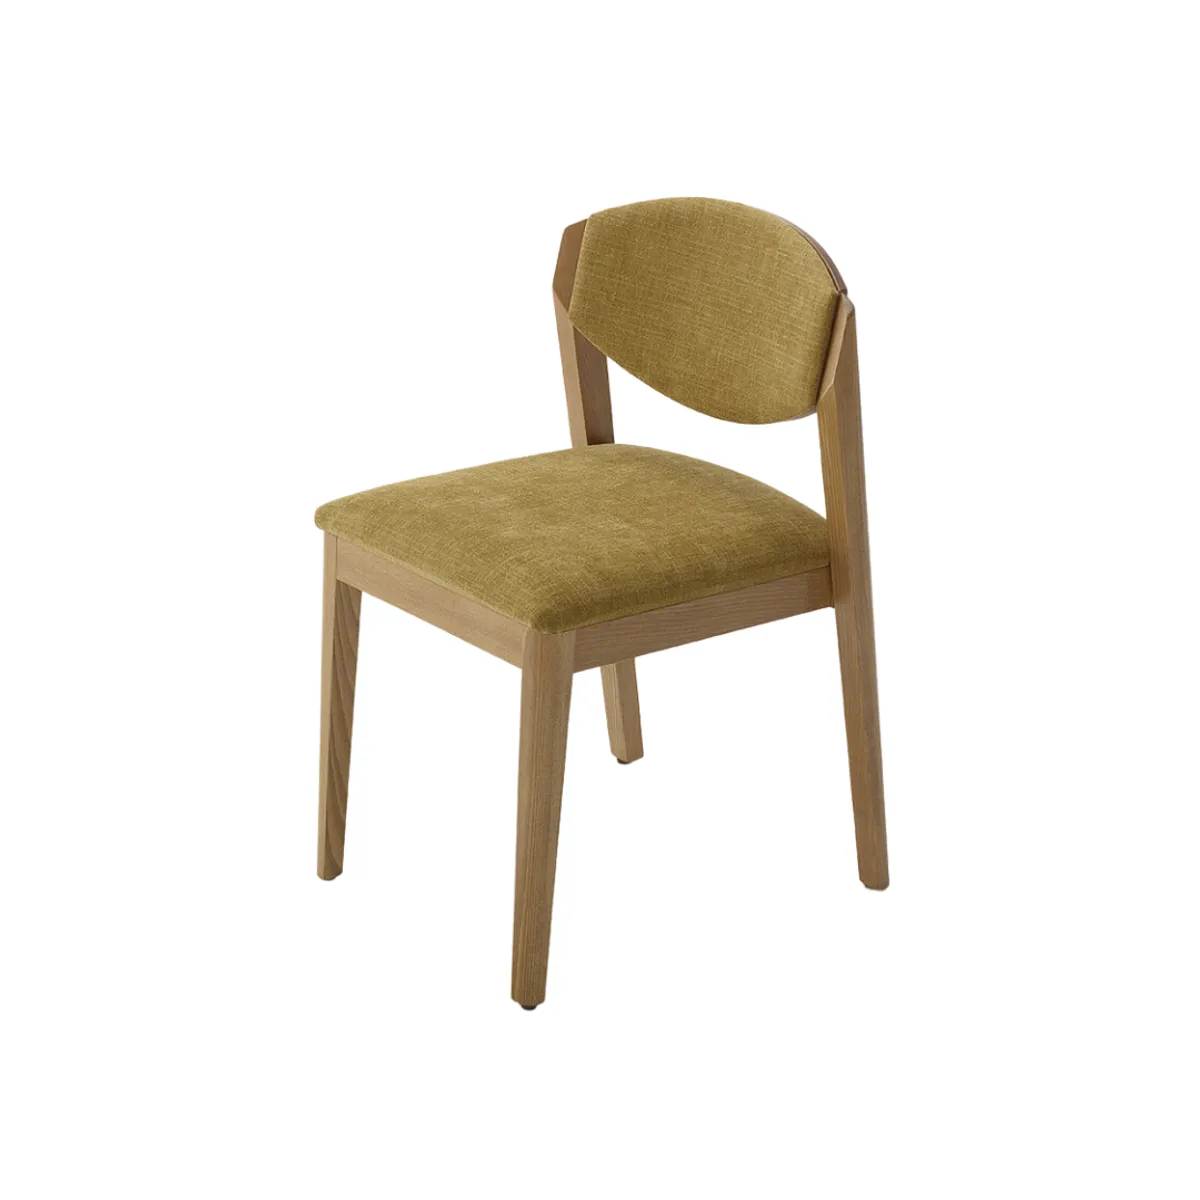 Zarina chair 1